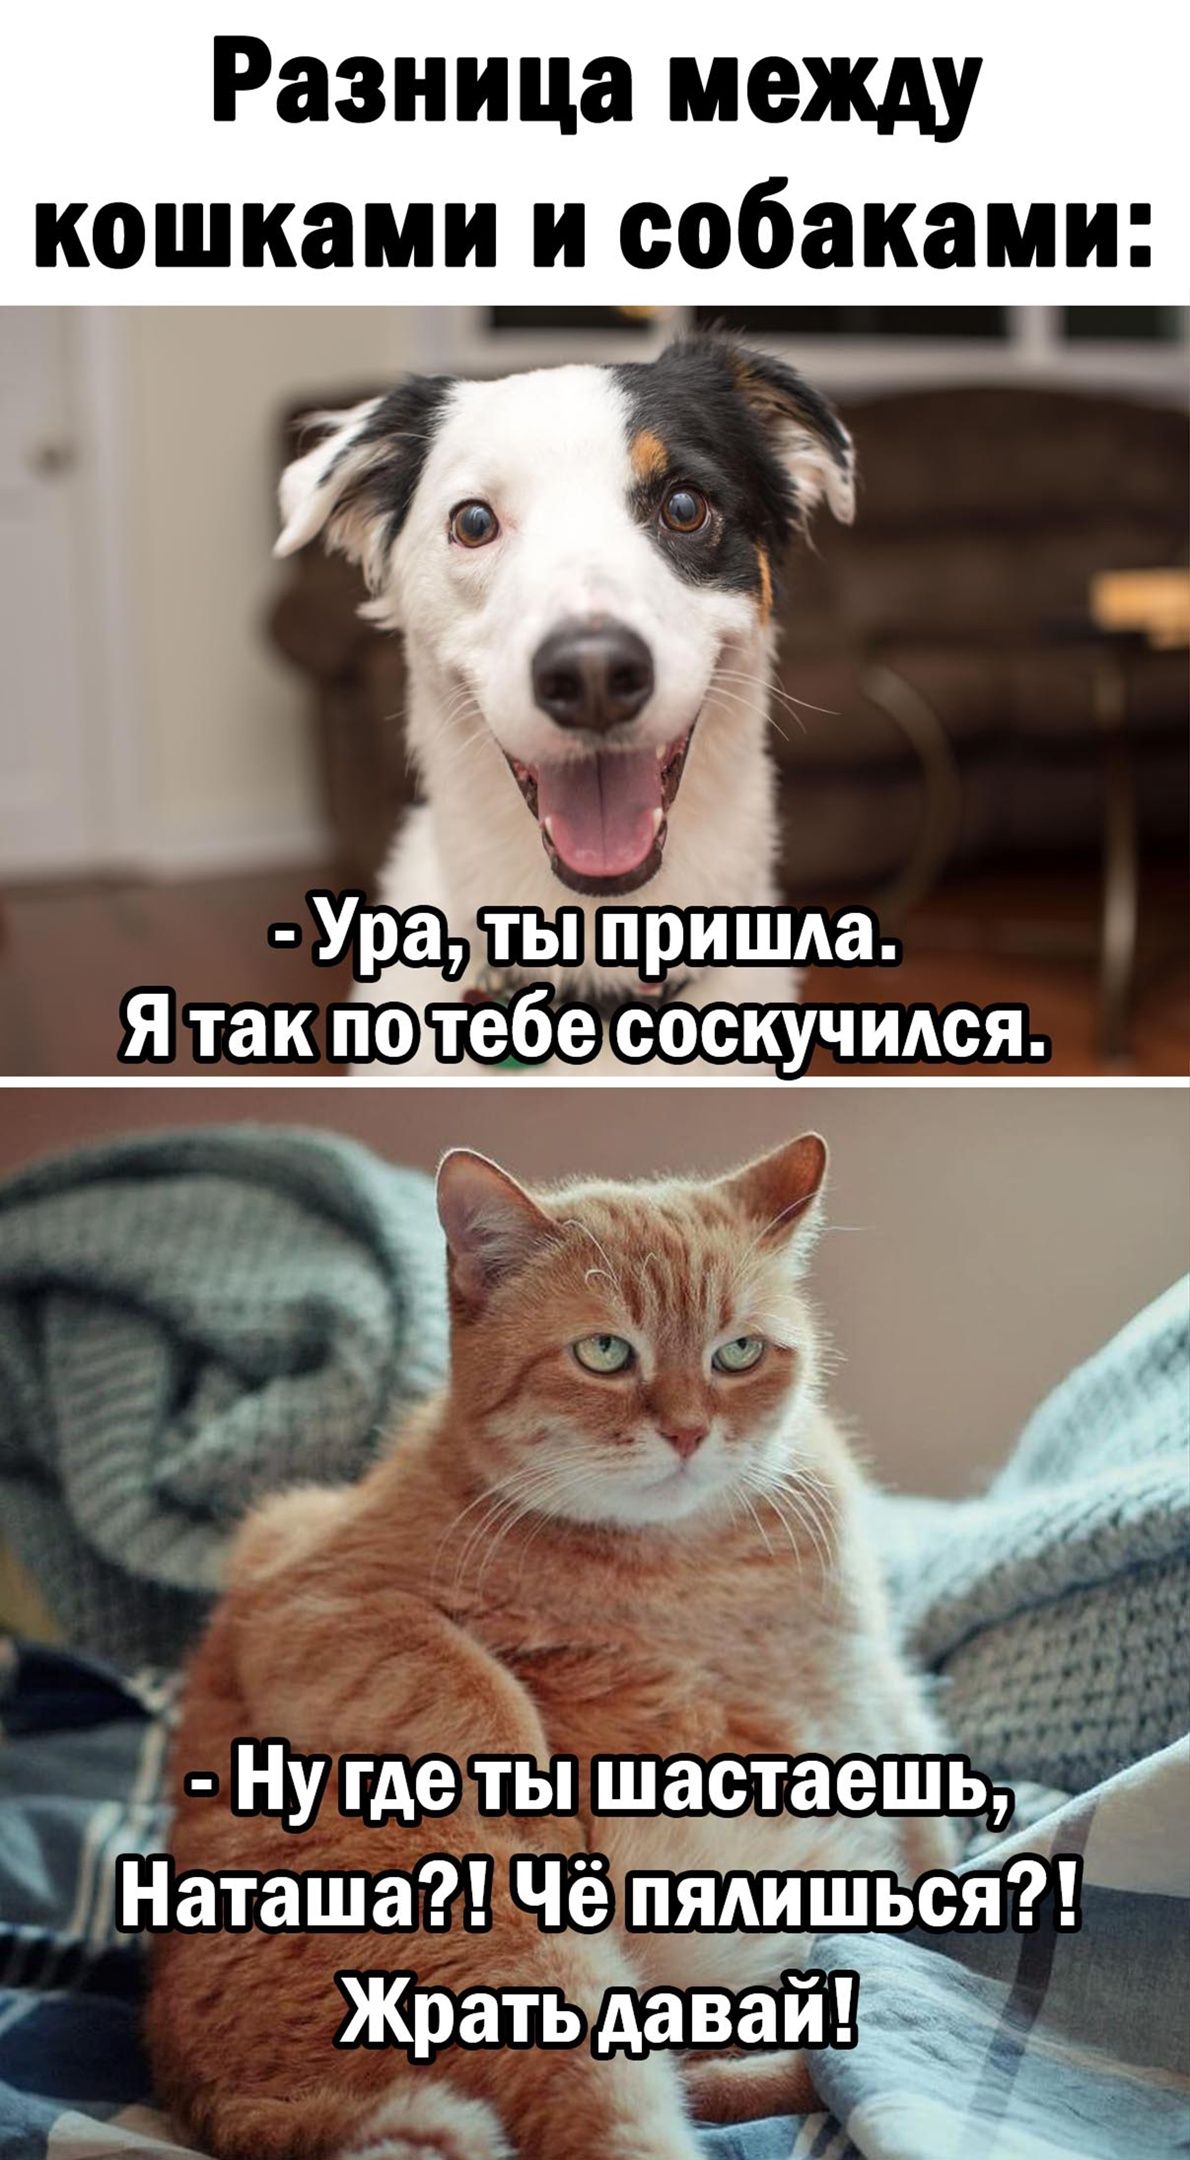 Разница между кошками и собаками _ таша ЧёпдАишься Жратпэхааай __ й Ну где тёп шастаешь На